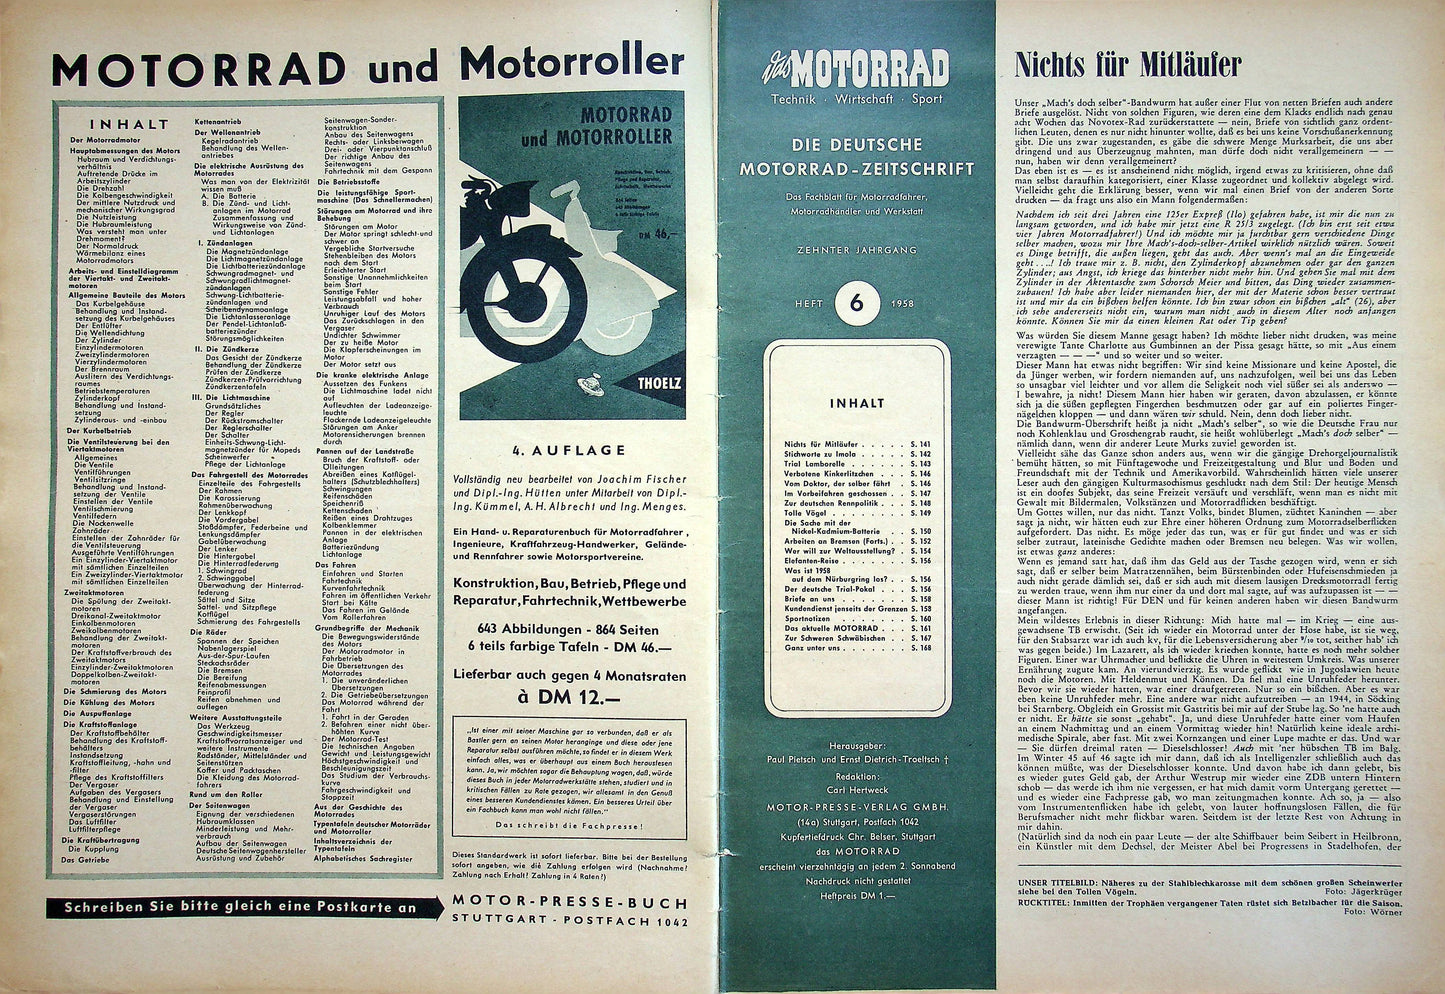 Motorrad 06/1958